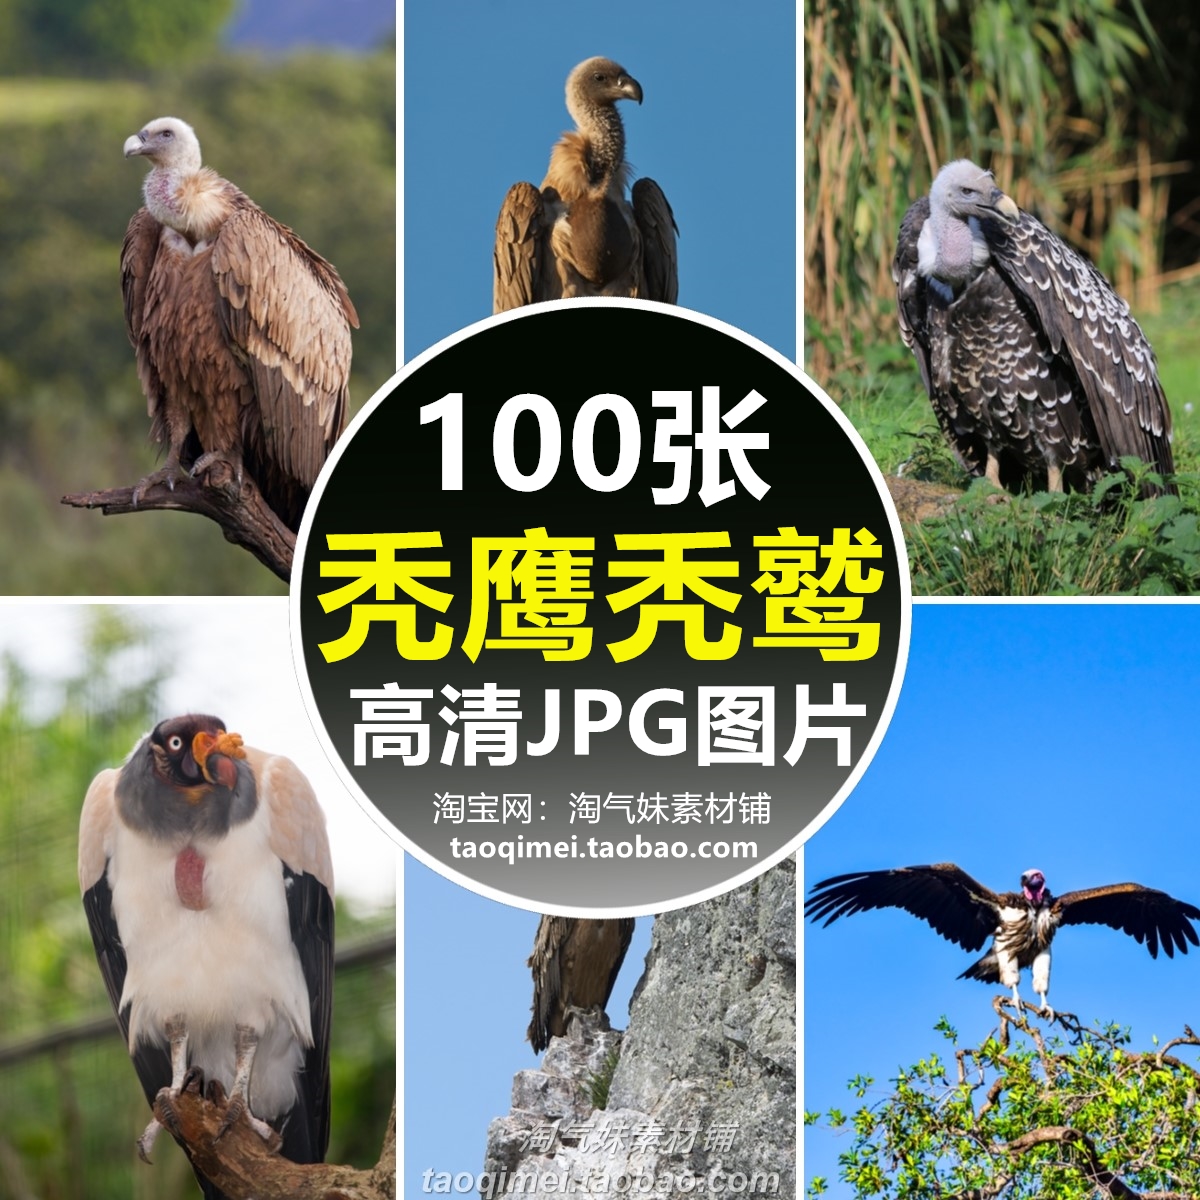 高清JPG秃鹰秃鹫图片兀鹫大型猛禽飞禽鸟类野生动物世界摄影素材